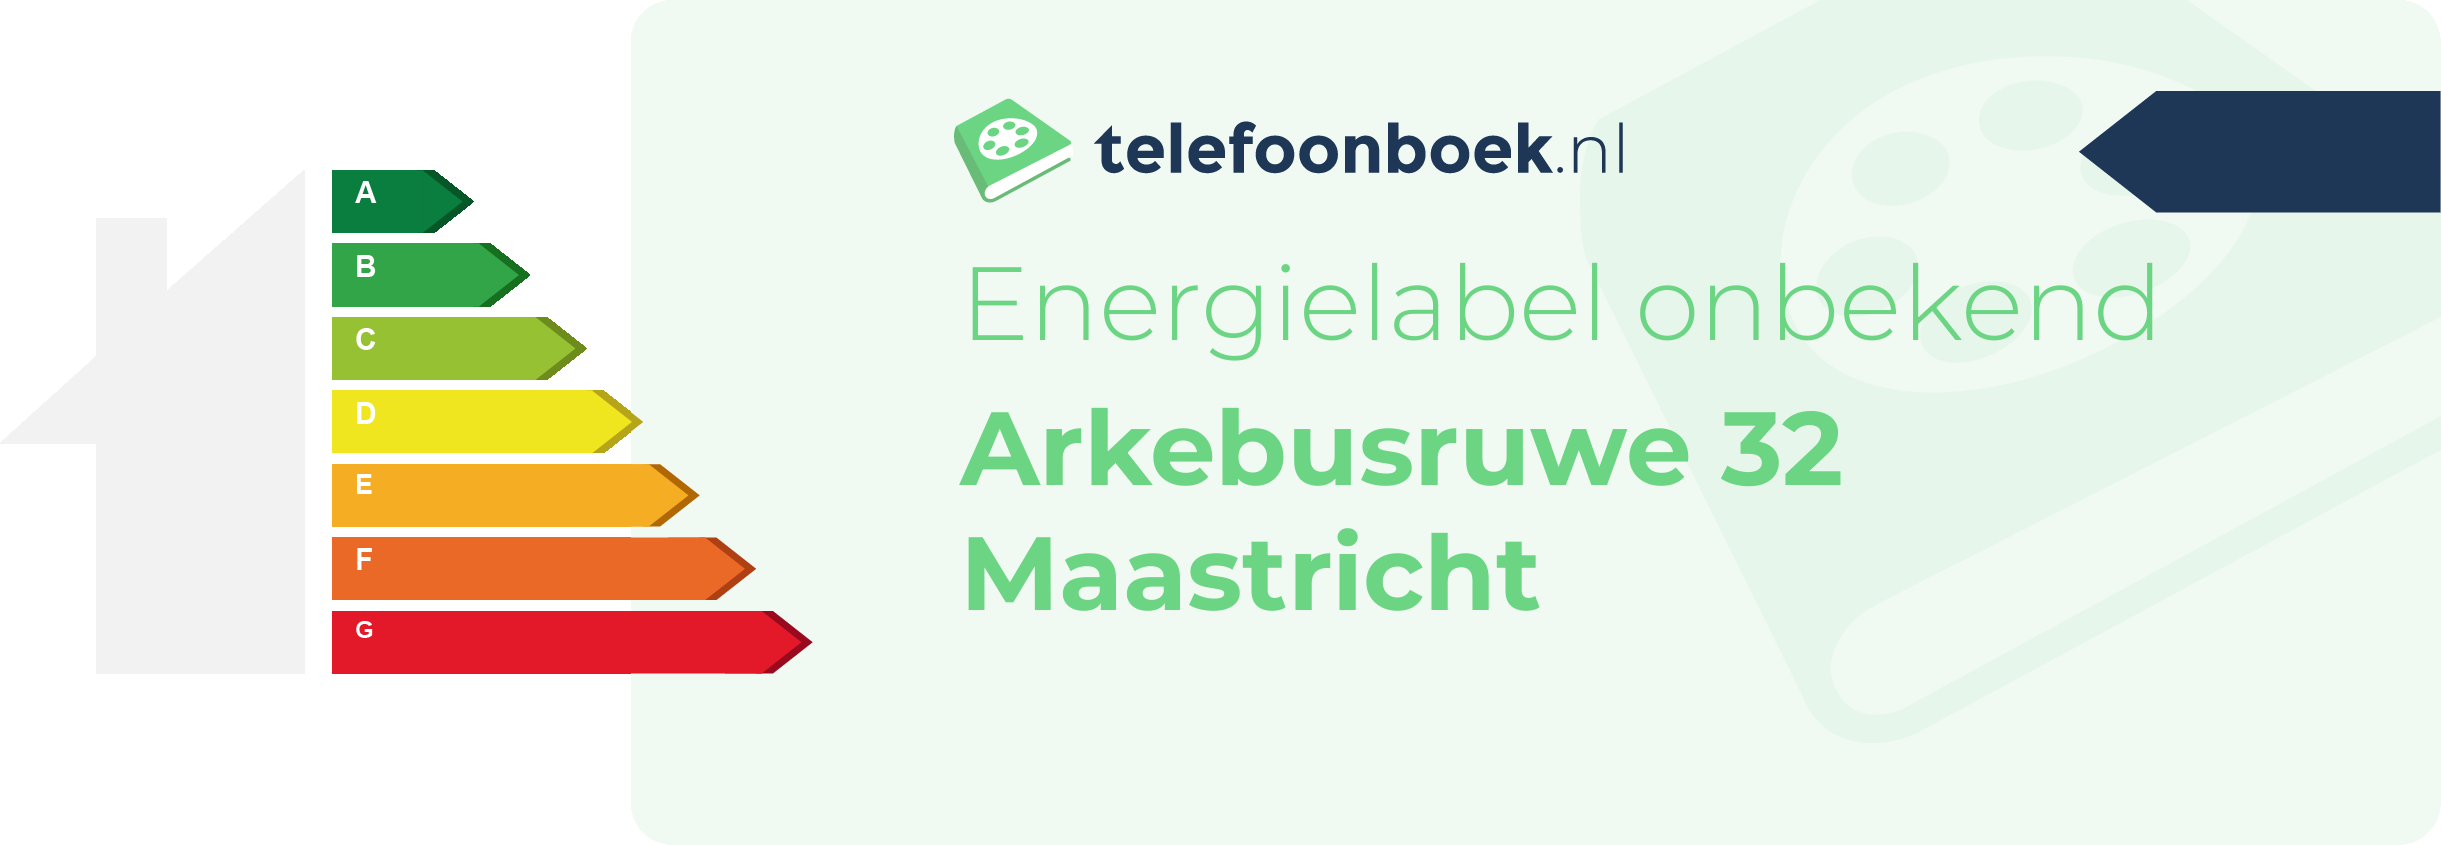 Energielabel Arkebusruwe 32 Maastricht